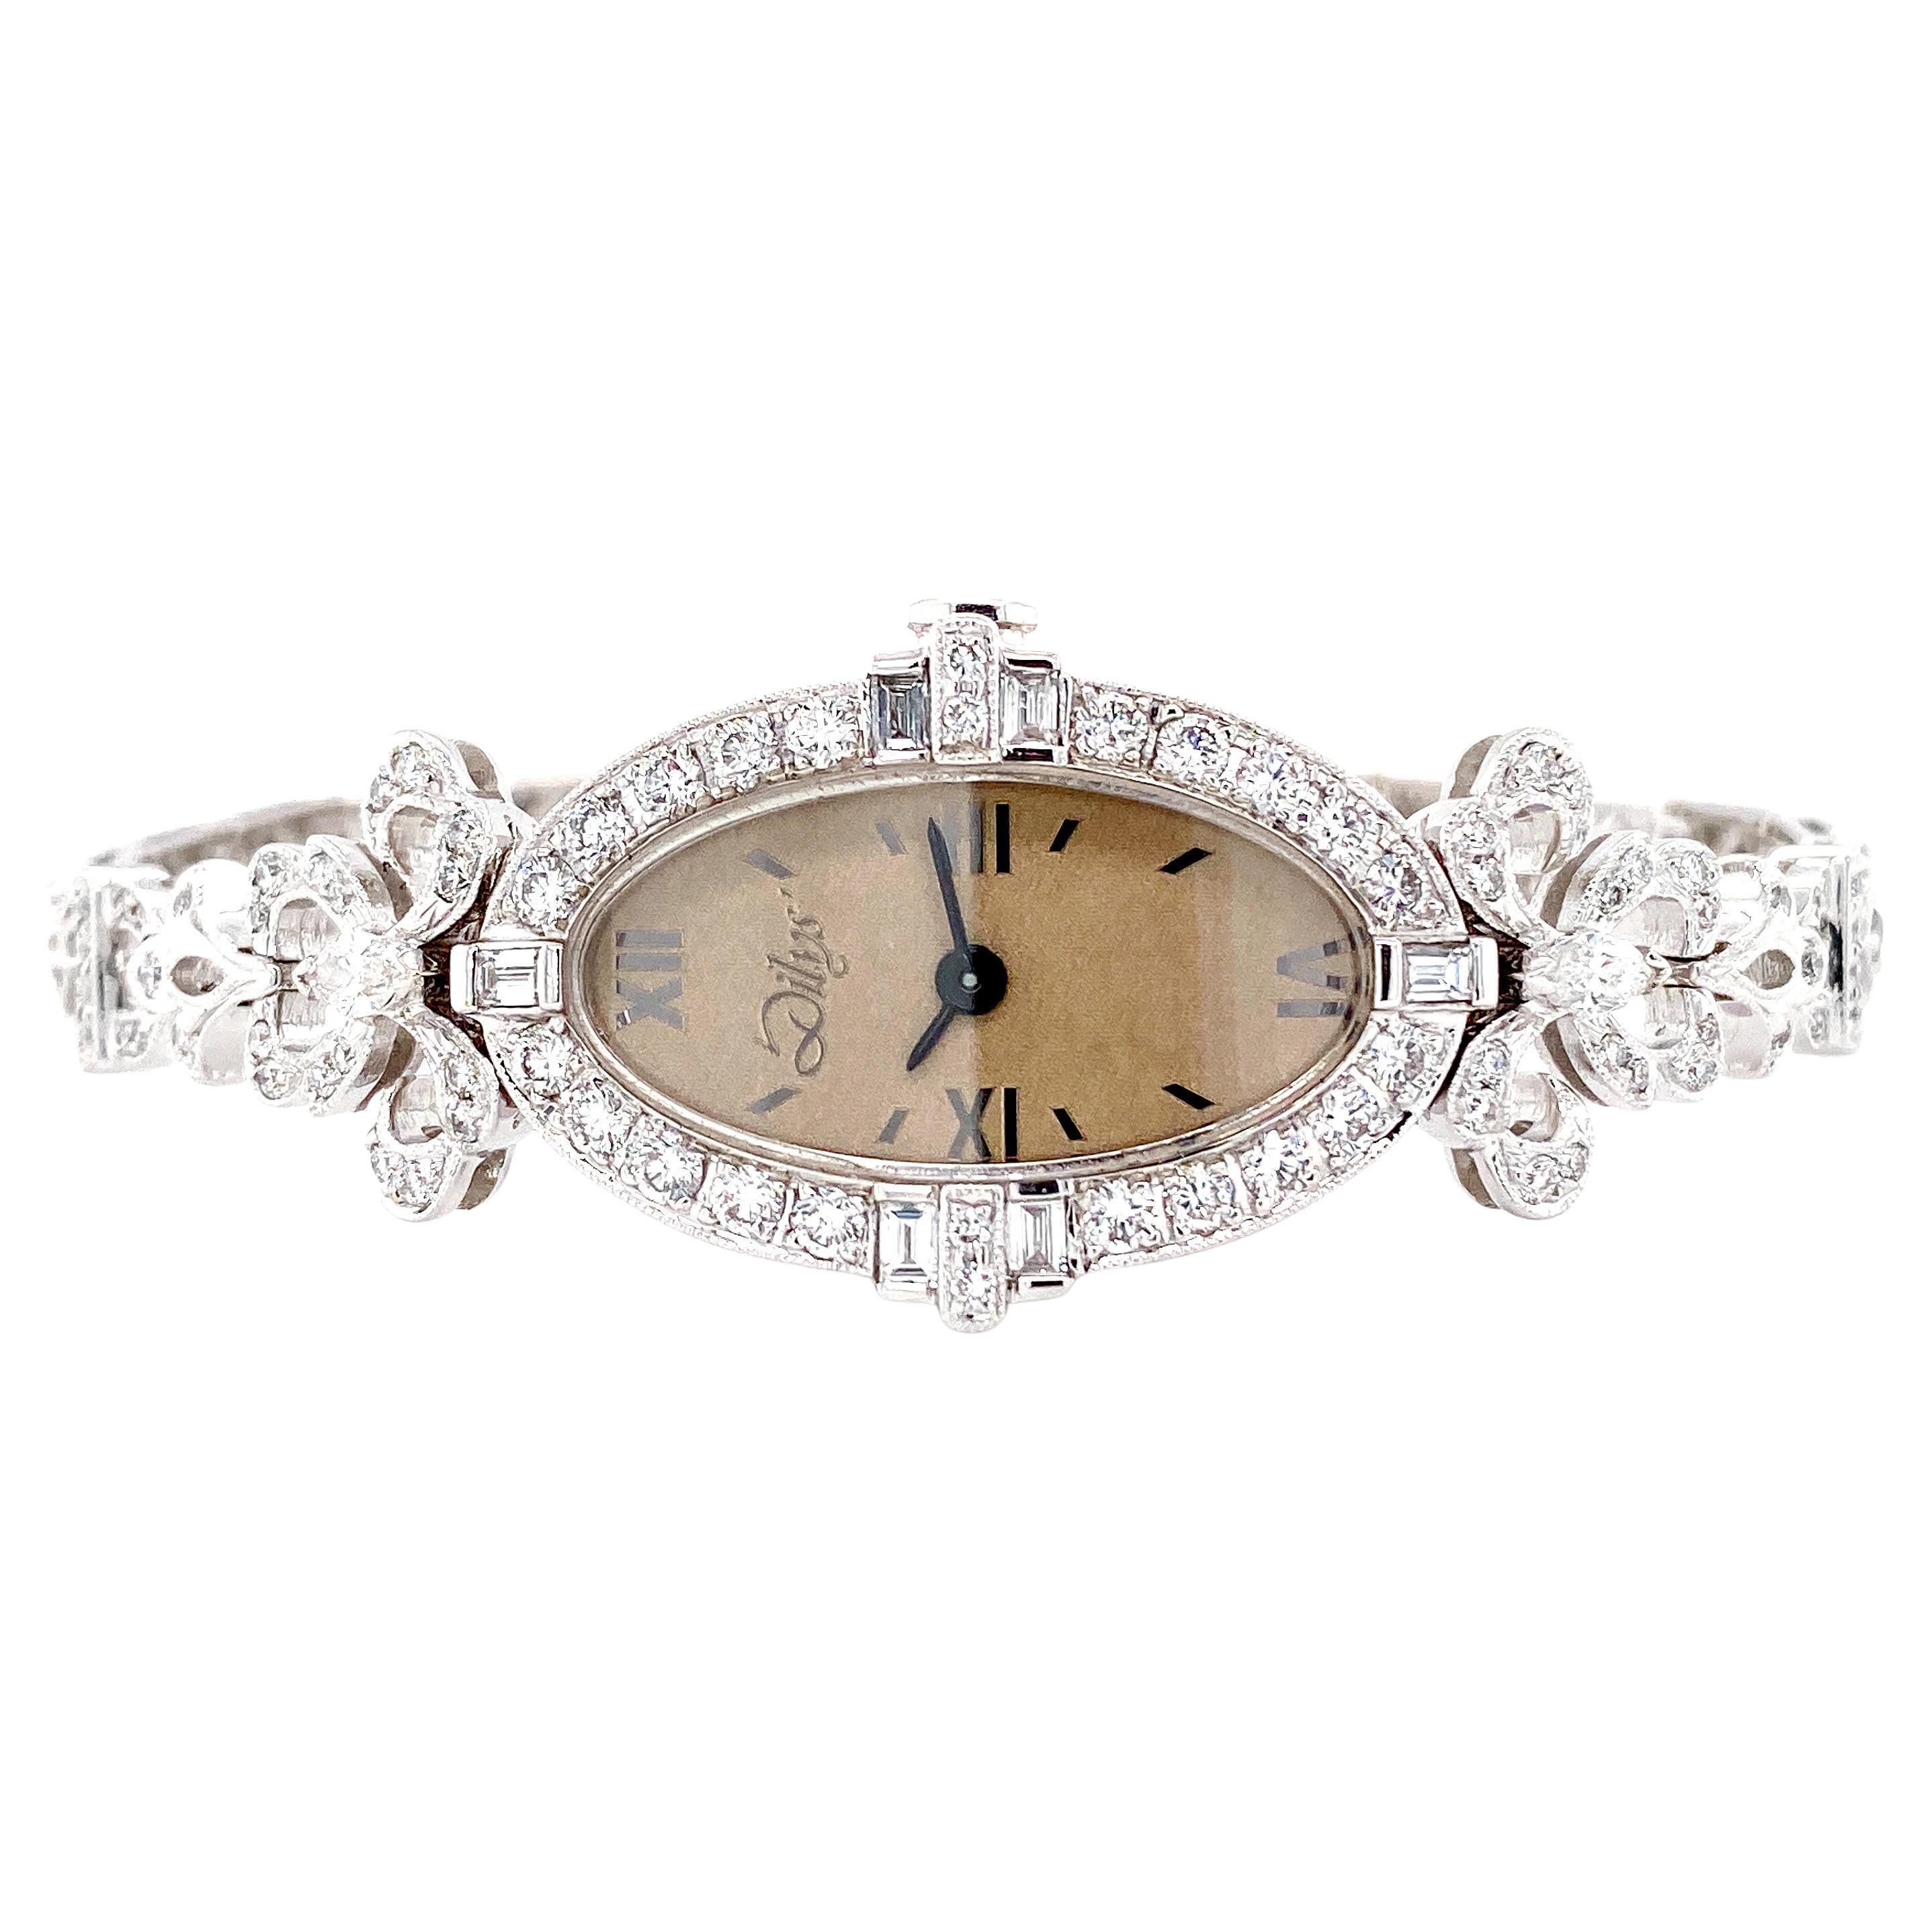 Art Deco inspirierte Schweizer Quarz-Uhr aus 18 Karat Gold mit Diamanten